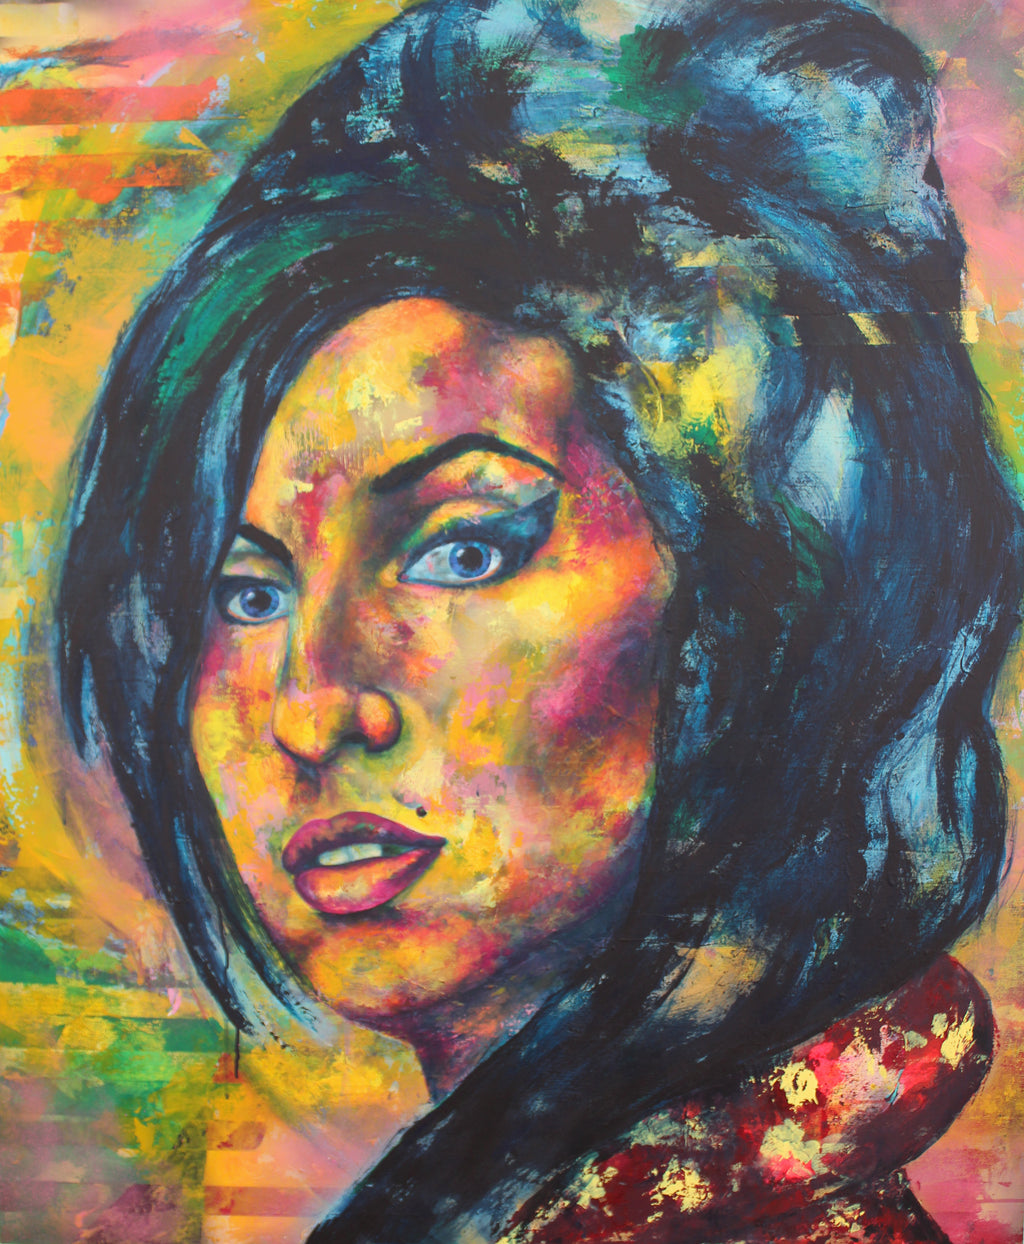 Amy Winehouse von Kascho Art aus Aachen